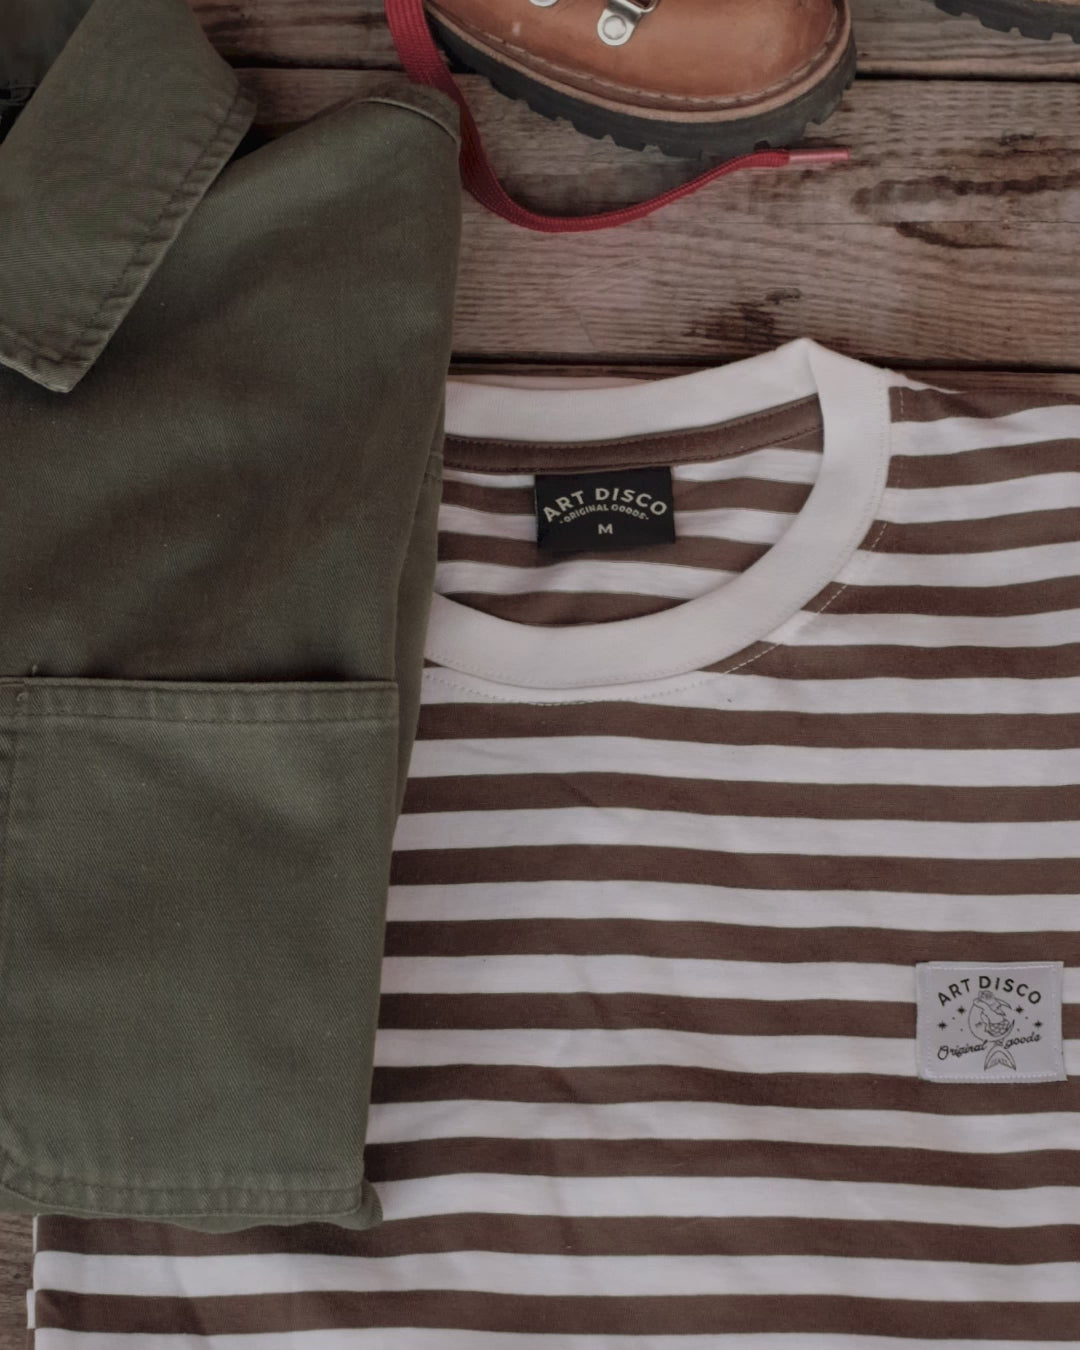 'The Rover' Striped T-Shirt by Art Disco Original Goods